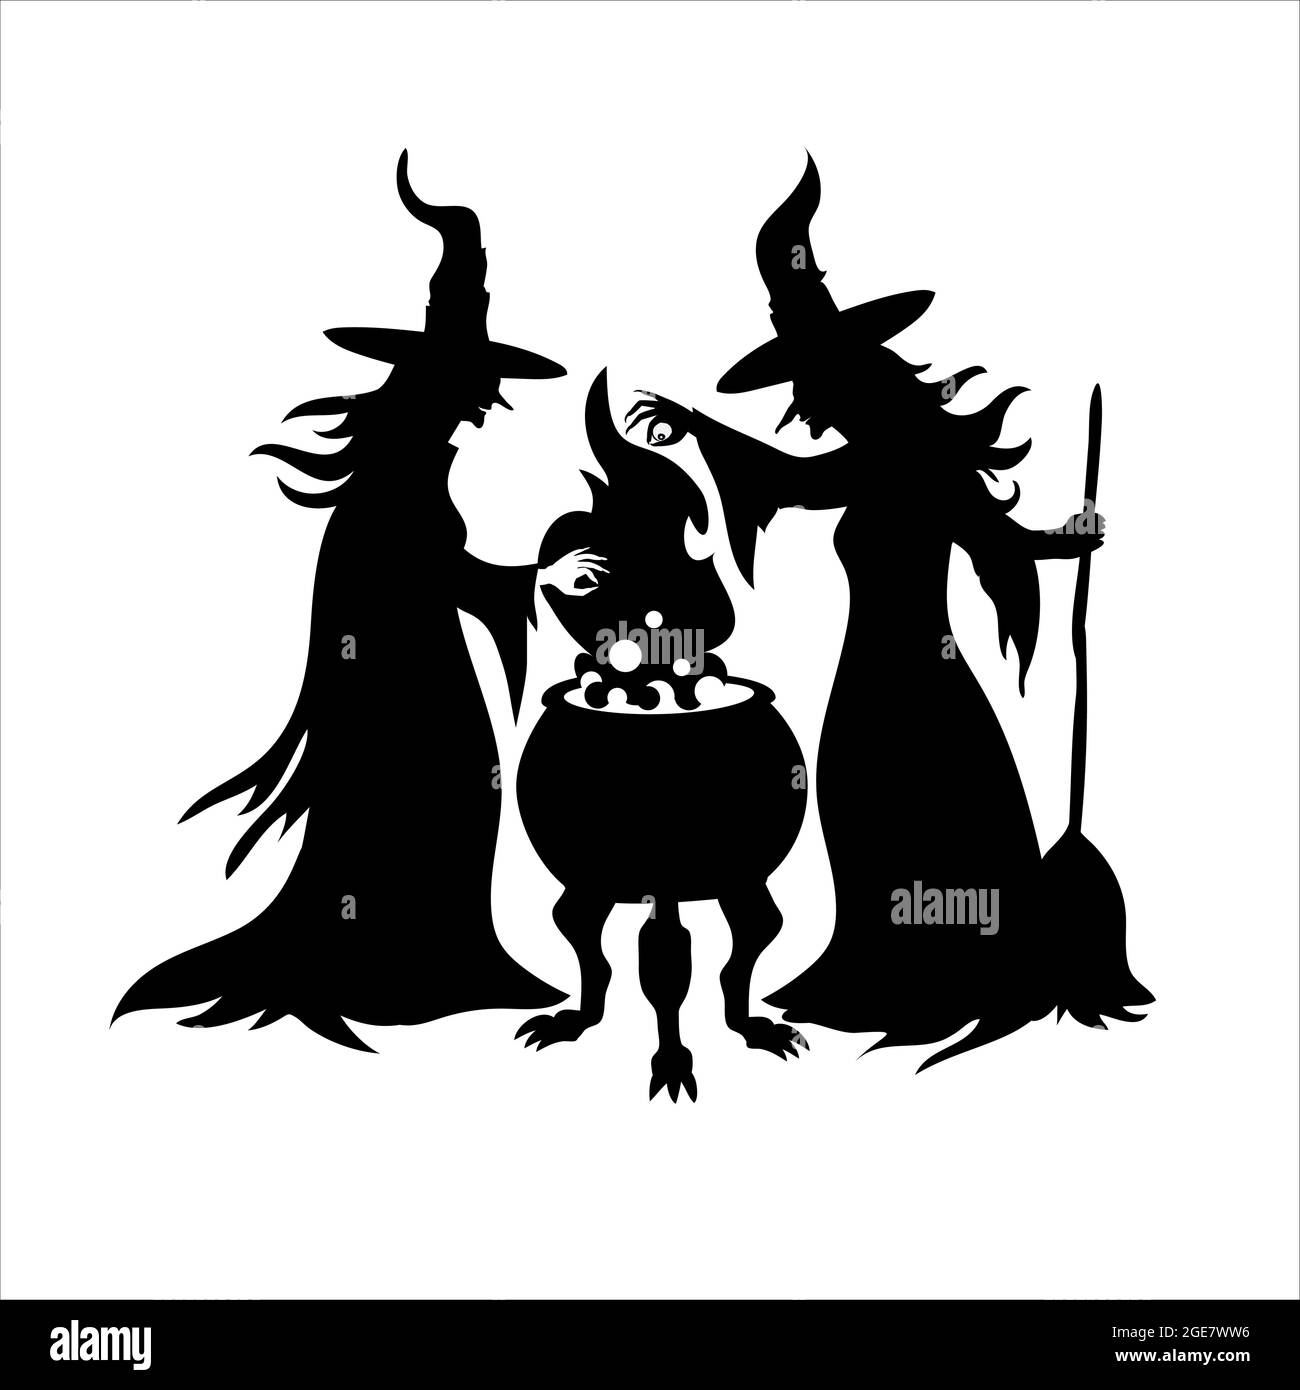 Schwarze Silhouette von zwei Hexen mit einem Kessel. Happy Halloween Vektor Clipart Illustration von Hexen brauen einen Zaubertrank. Weißer Hintergrund. Stock Vektor